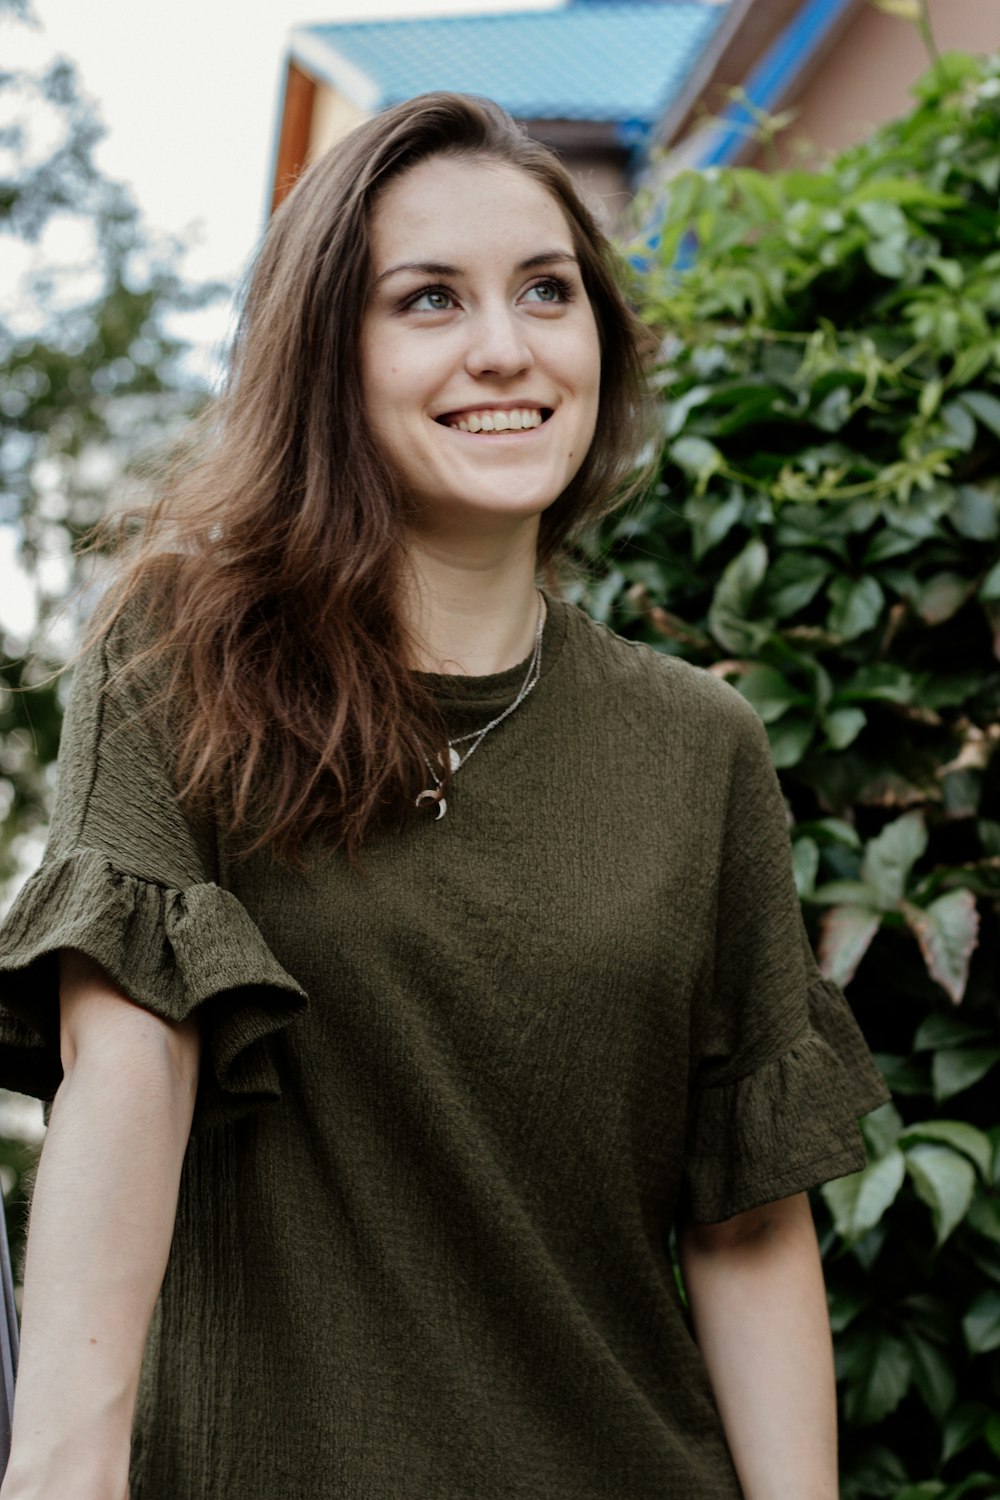 昼間、緑の葉の木のそばに立つ緑のクルーネックTシャツを着た笑顔の女性